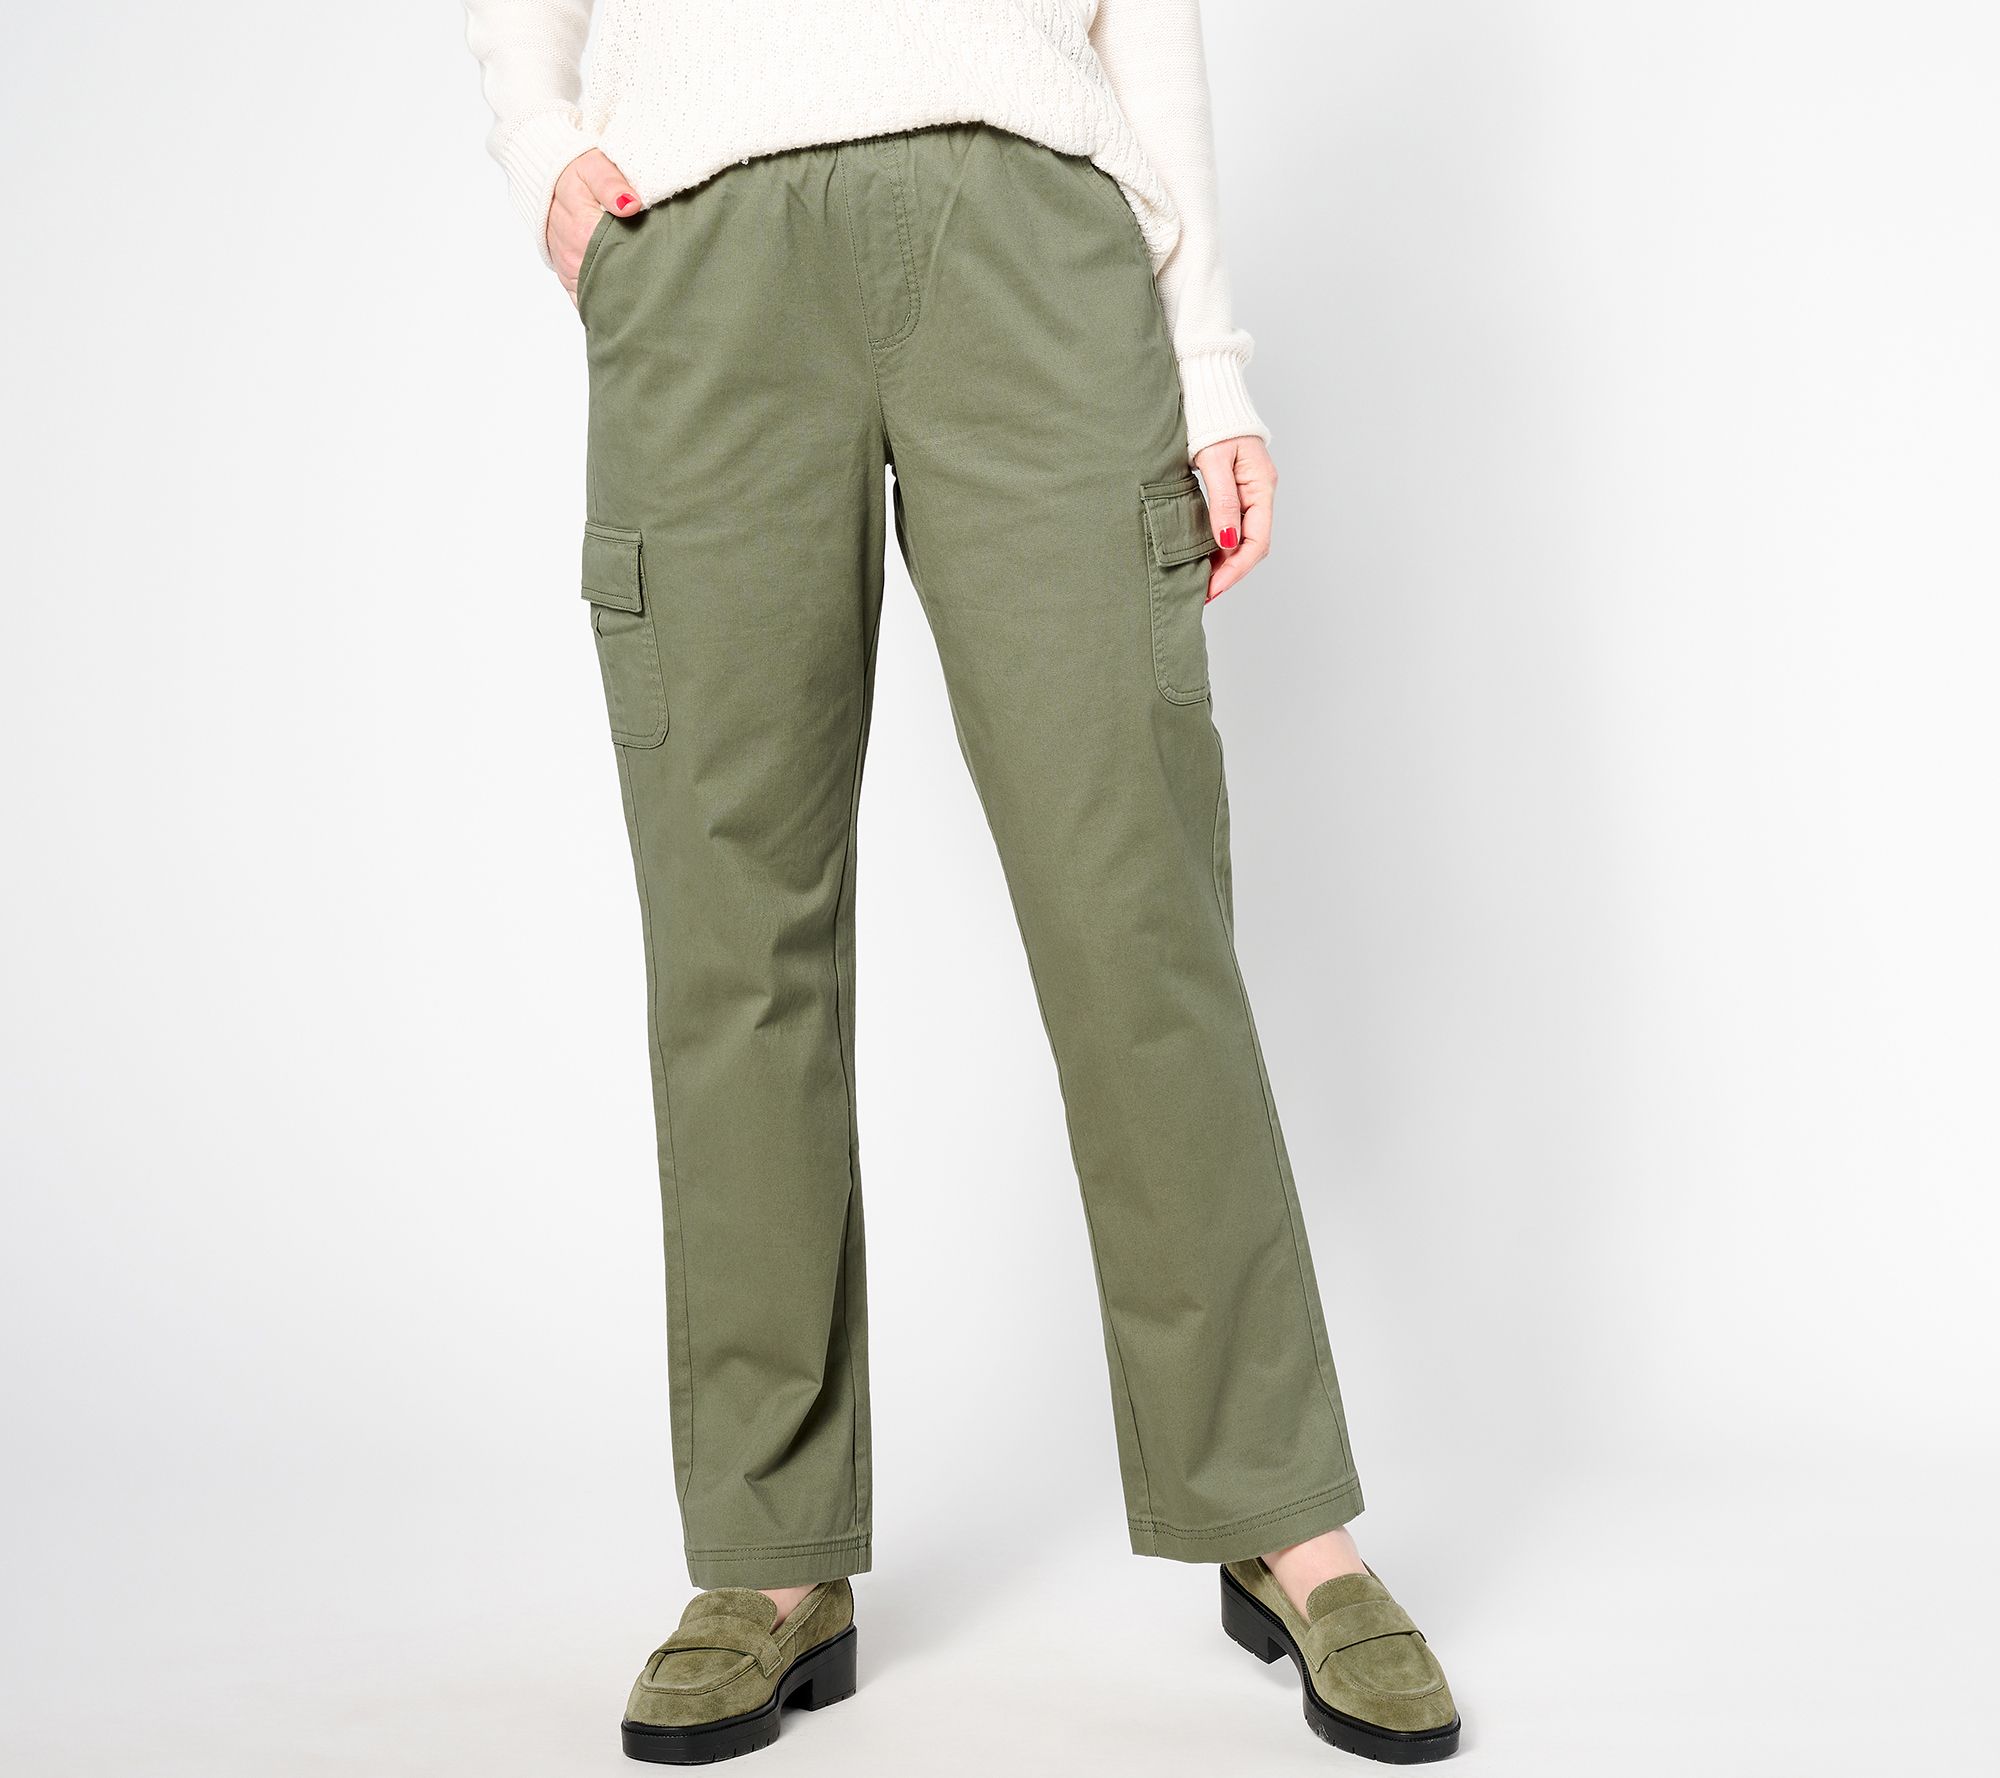 Denim & Co. - Misses X-Small (2-4) - Full-Length Pants 